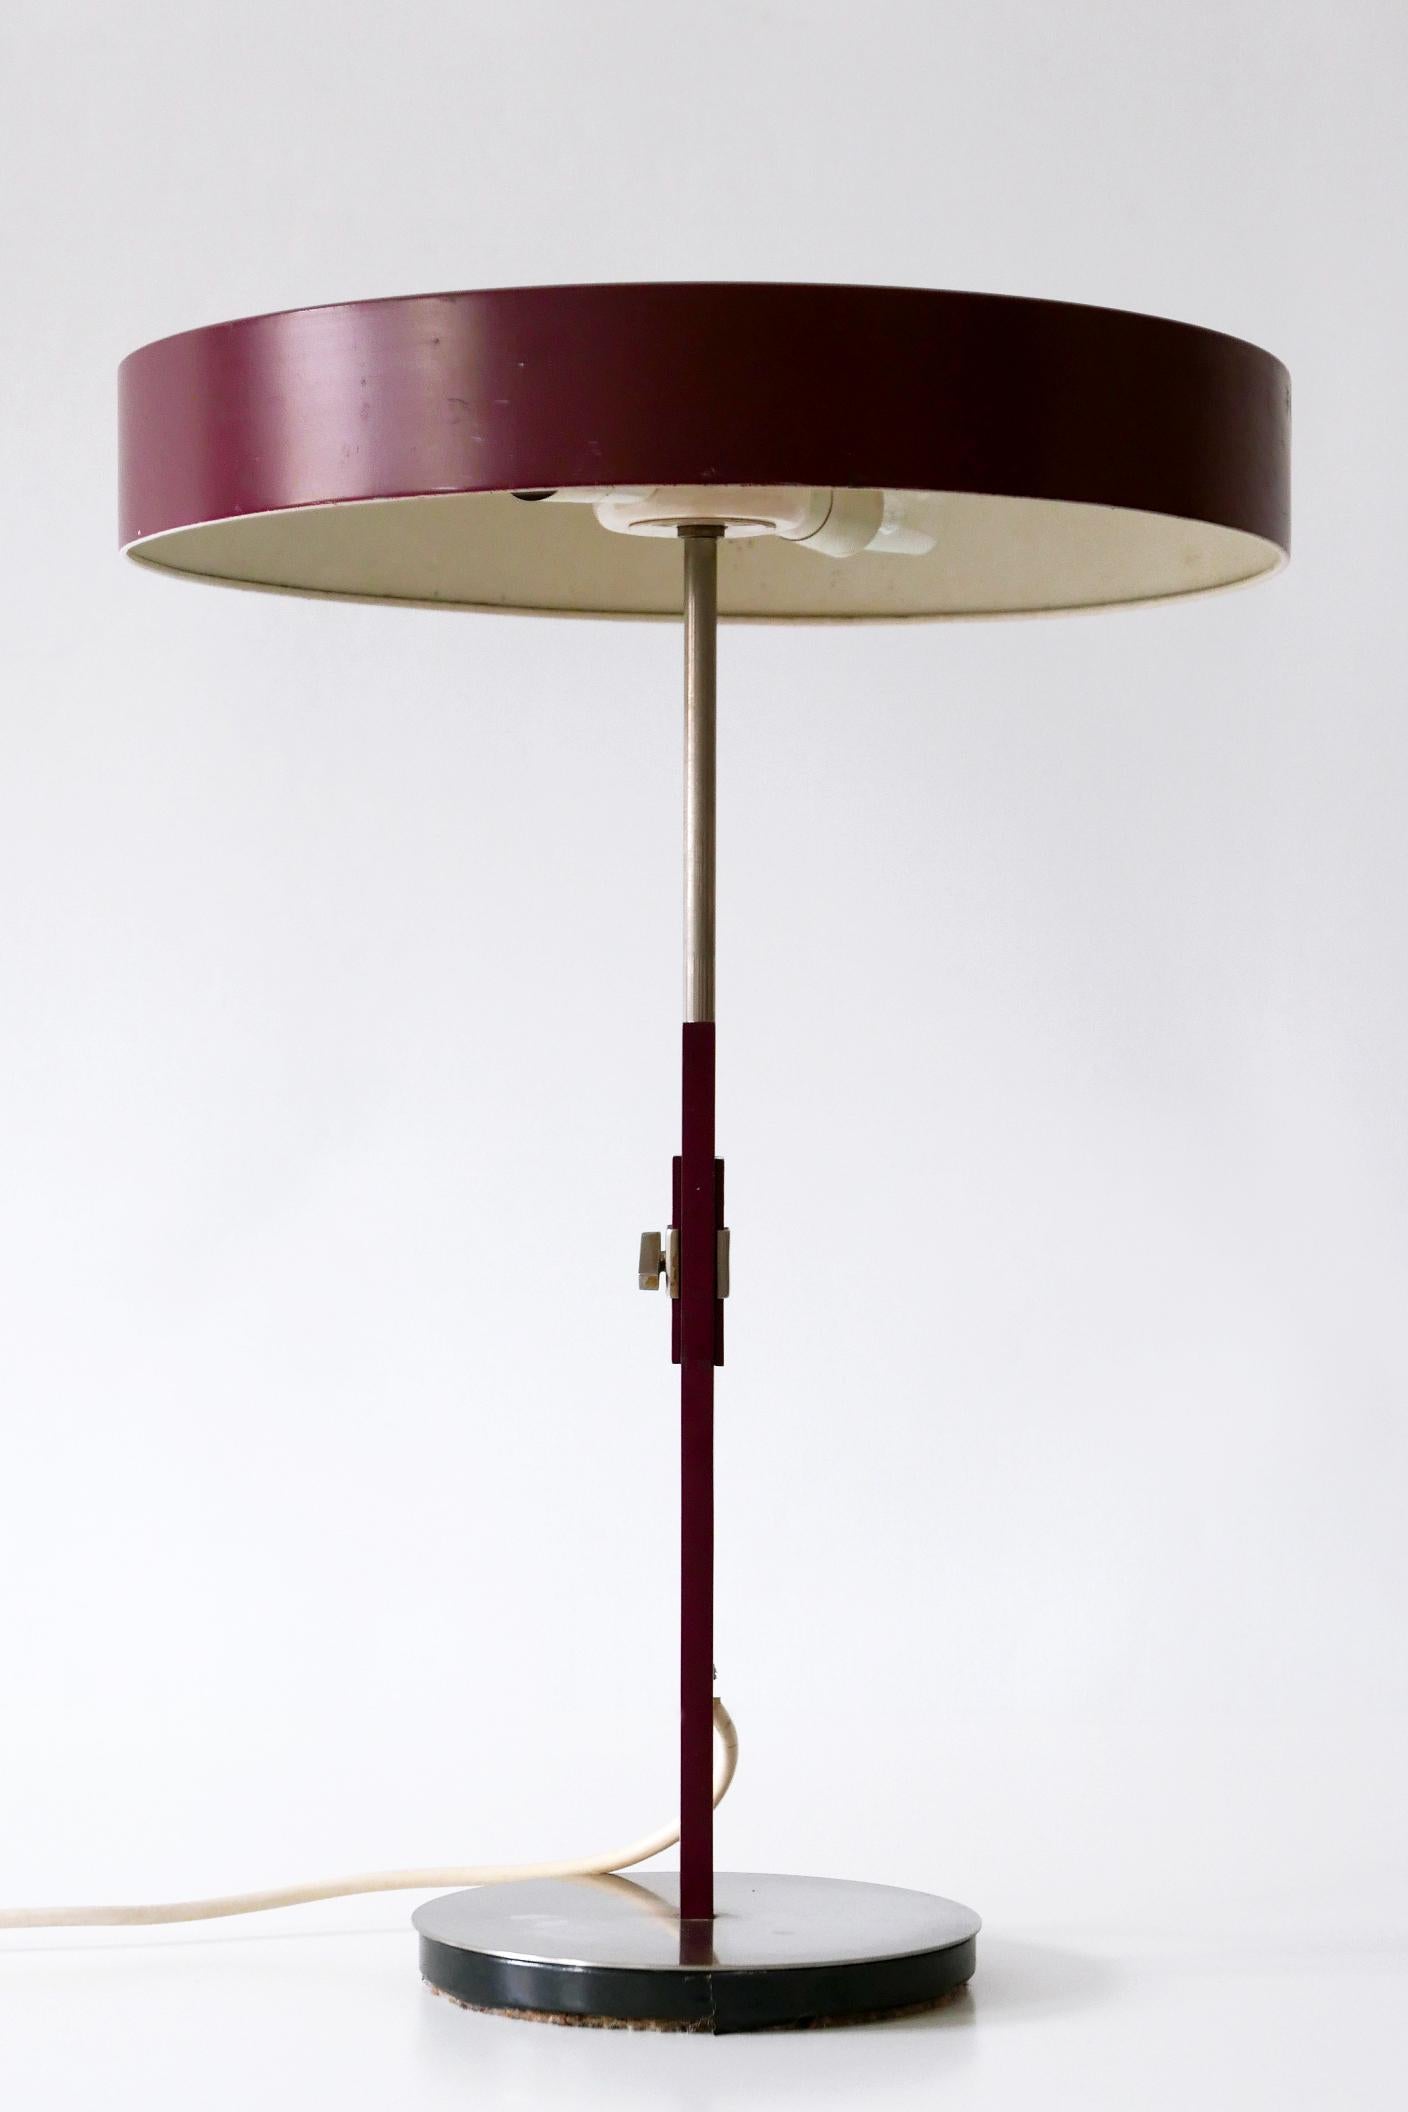 Enameled Luxury Mid-Century Modern President Table Lamp by Kaiser Leuchten 1960s Germany